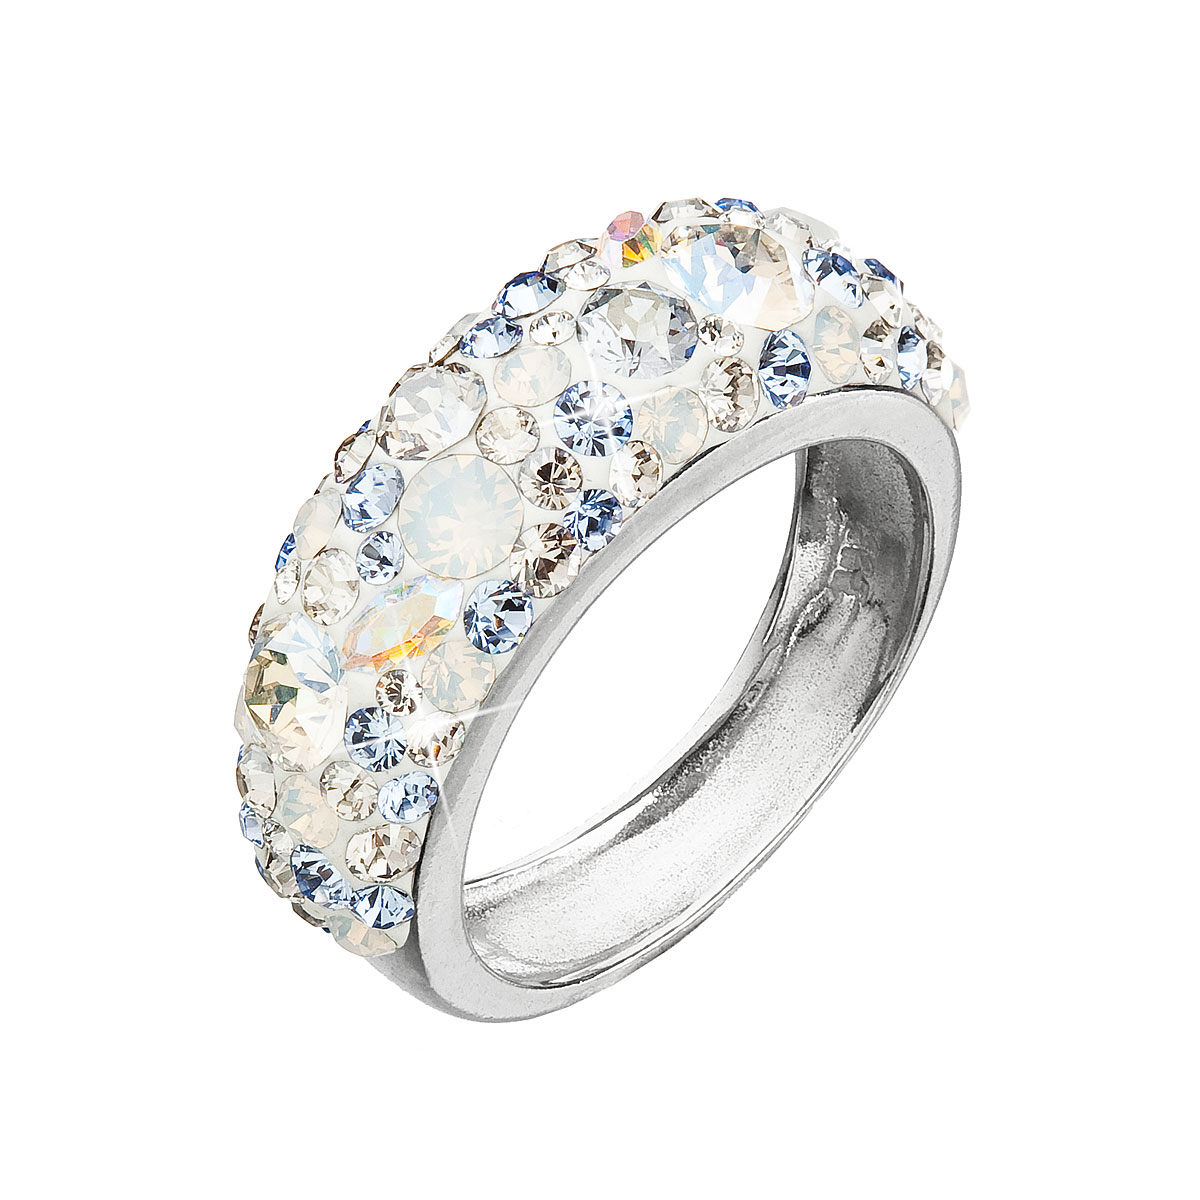 Strieborný prsteň s krištálmi Swarovski modrý 35031.3 light sapphire